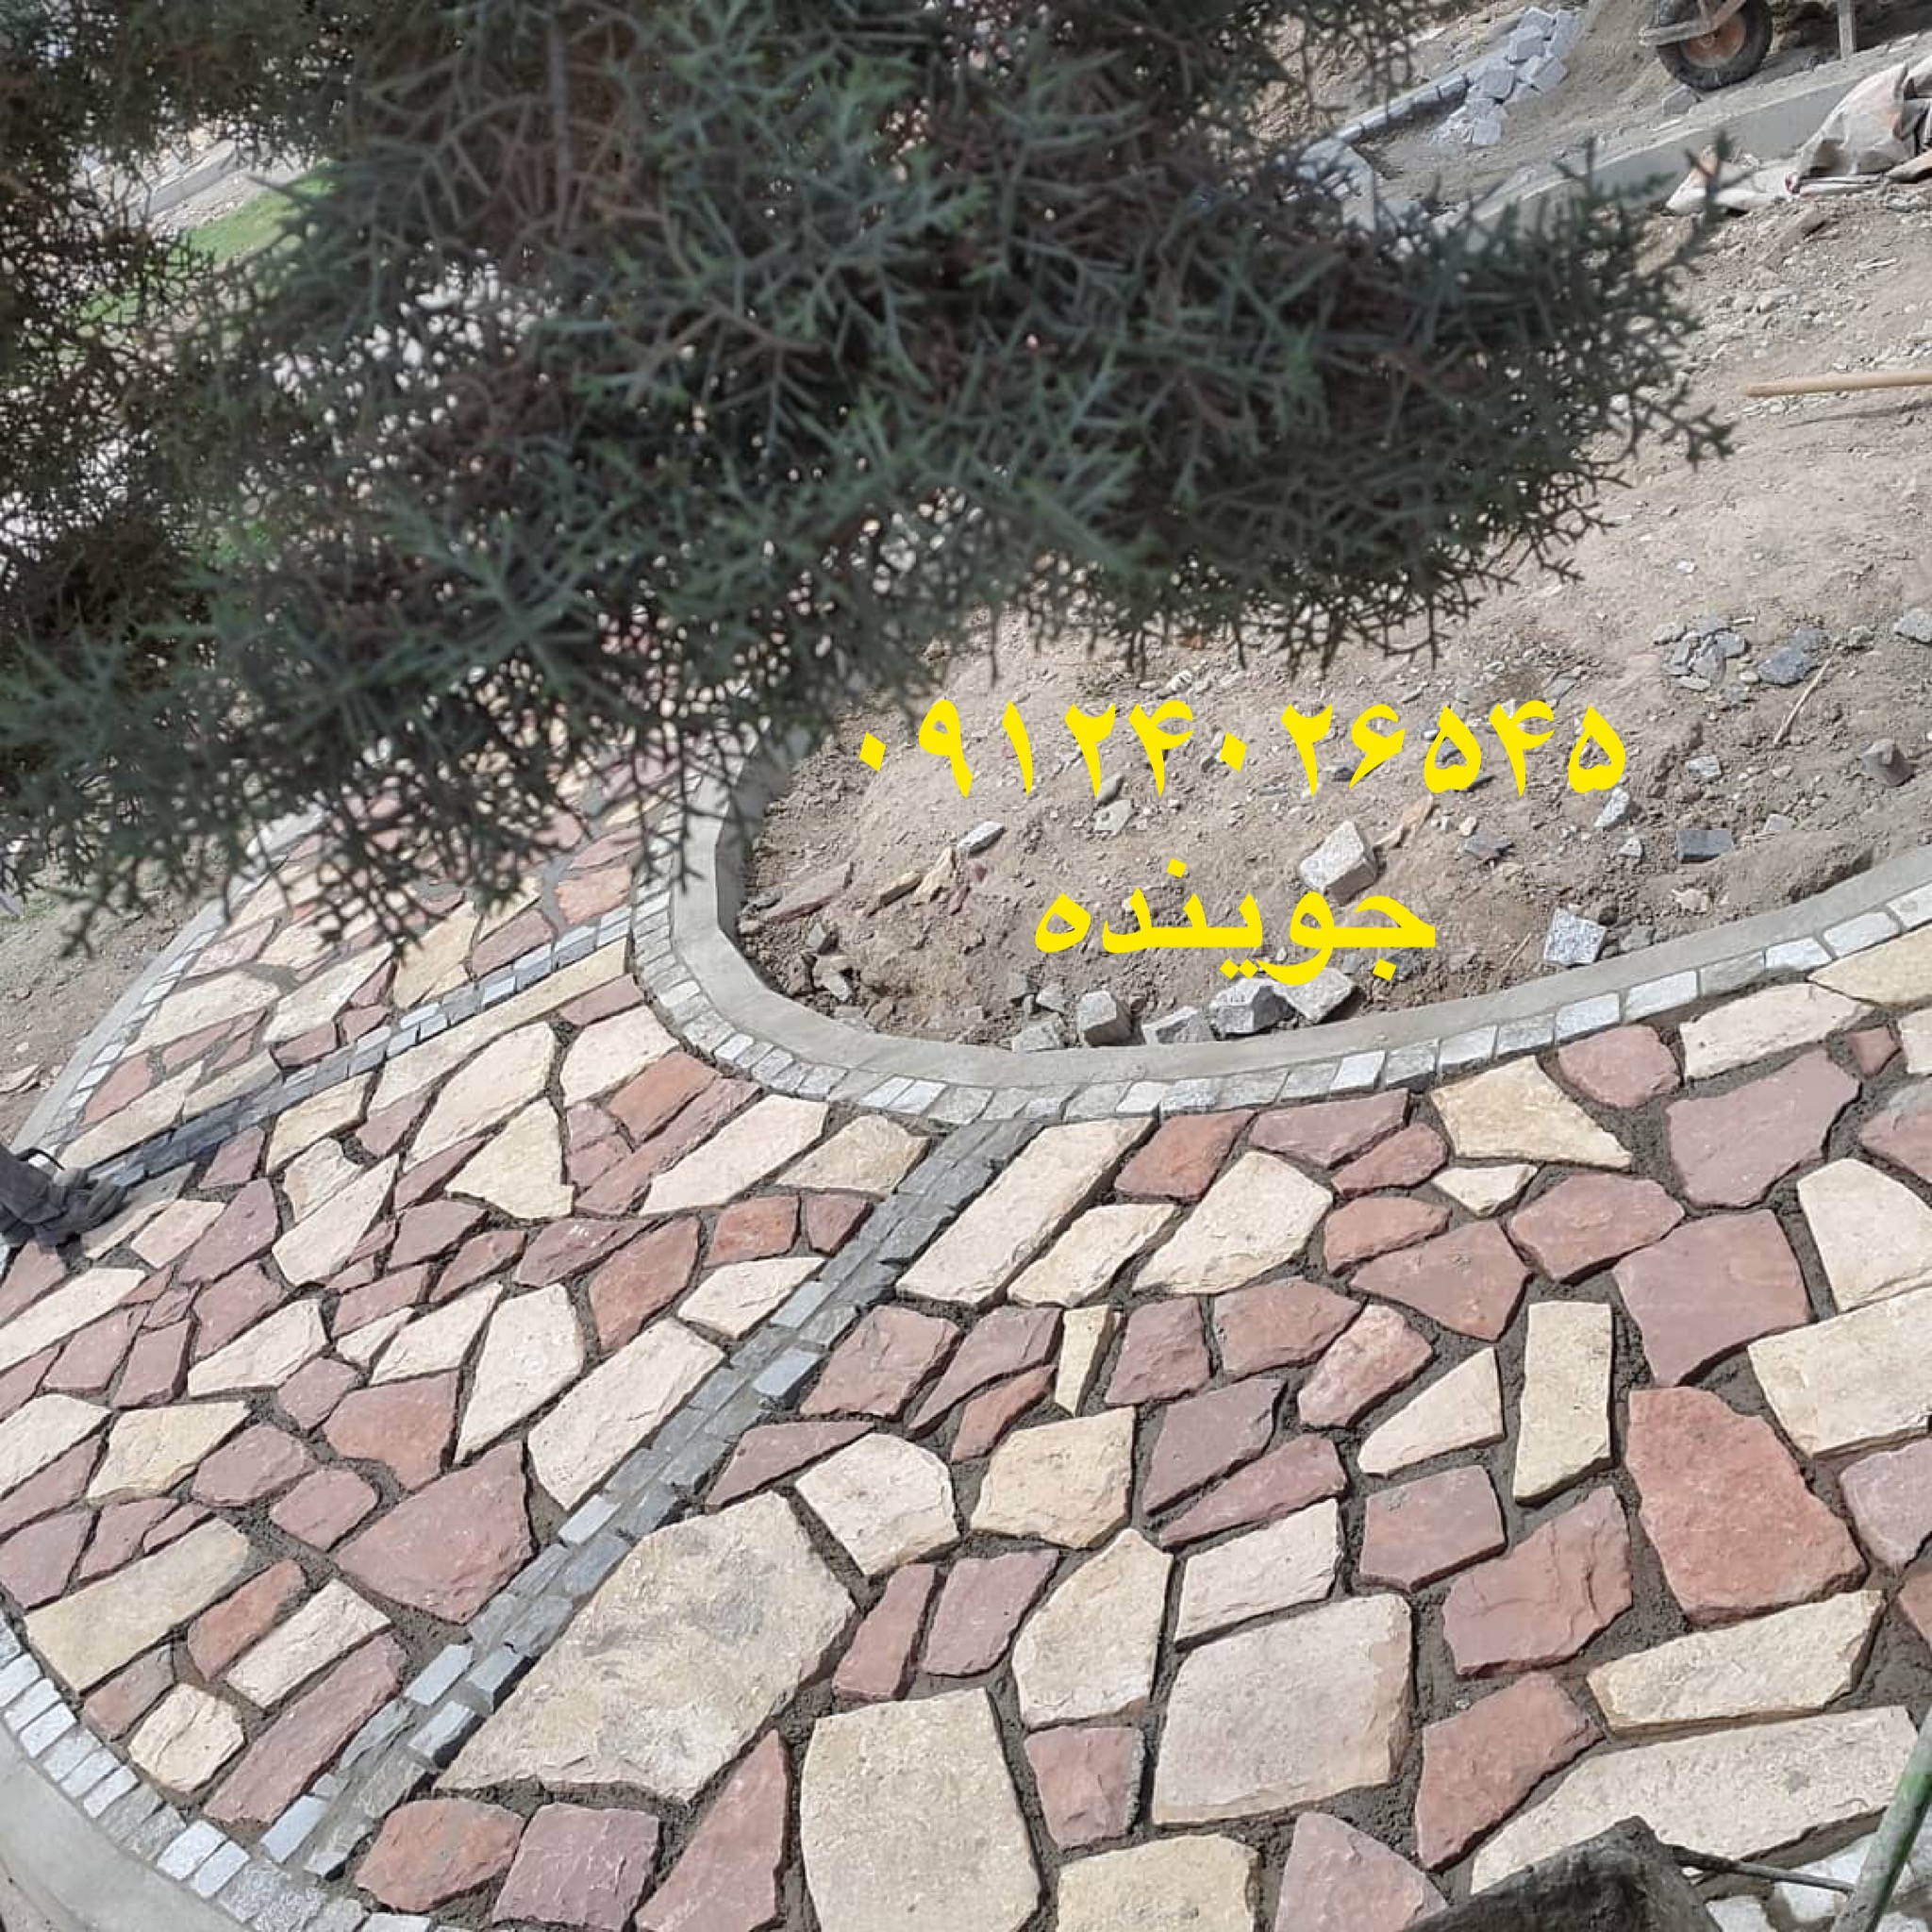 نصب سنگ لاشه  برای مسیر های پیاده روی پارک با استفاده از سنگ لاشه و سنگ مالون نصب و اجرا شده است 